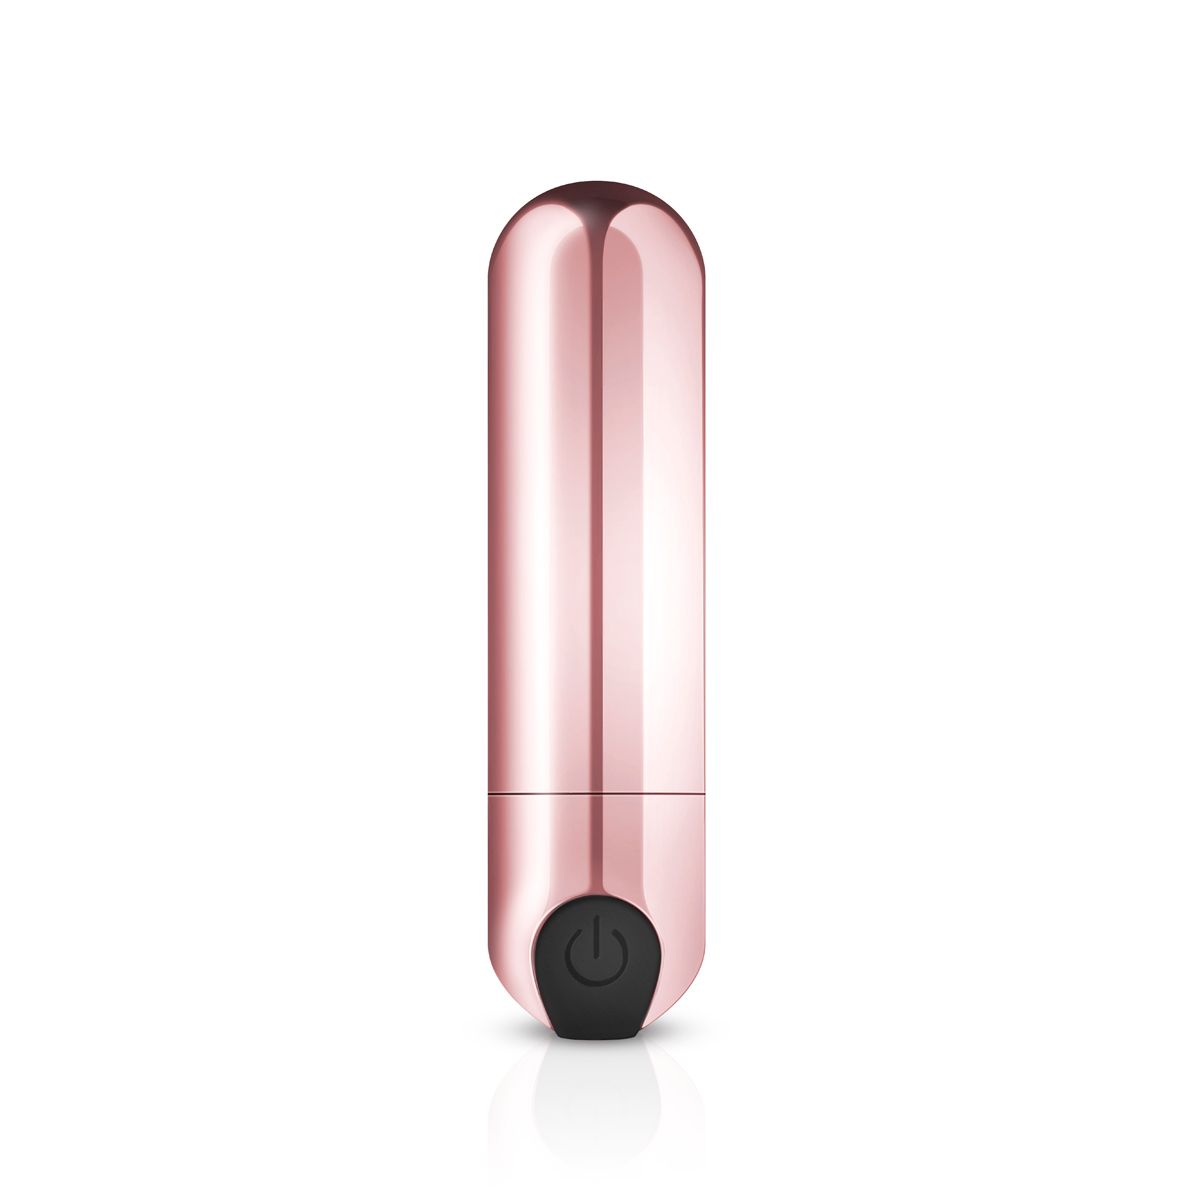 Золотистая вибропуля Rosy Gold Bullet Vibrator. Перезаряжаемая. Имеет идеально гладкую поверхность и 10 режимов вибрации.